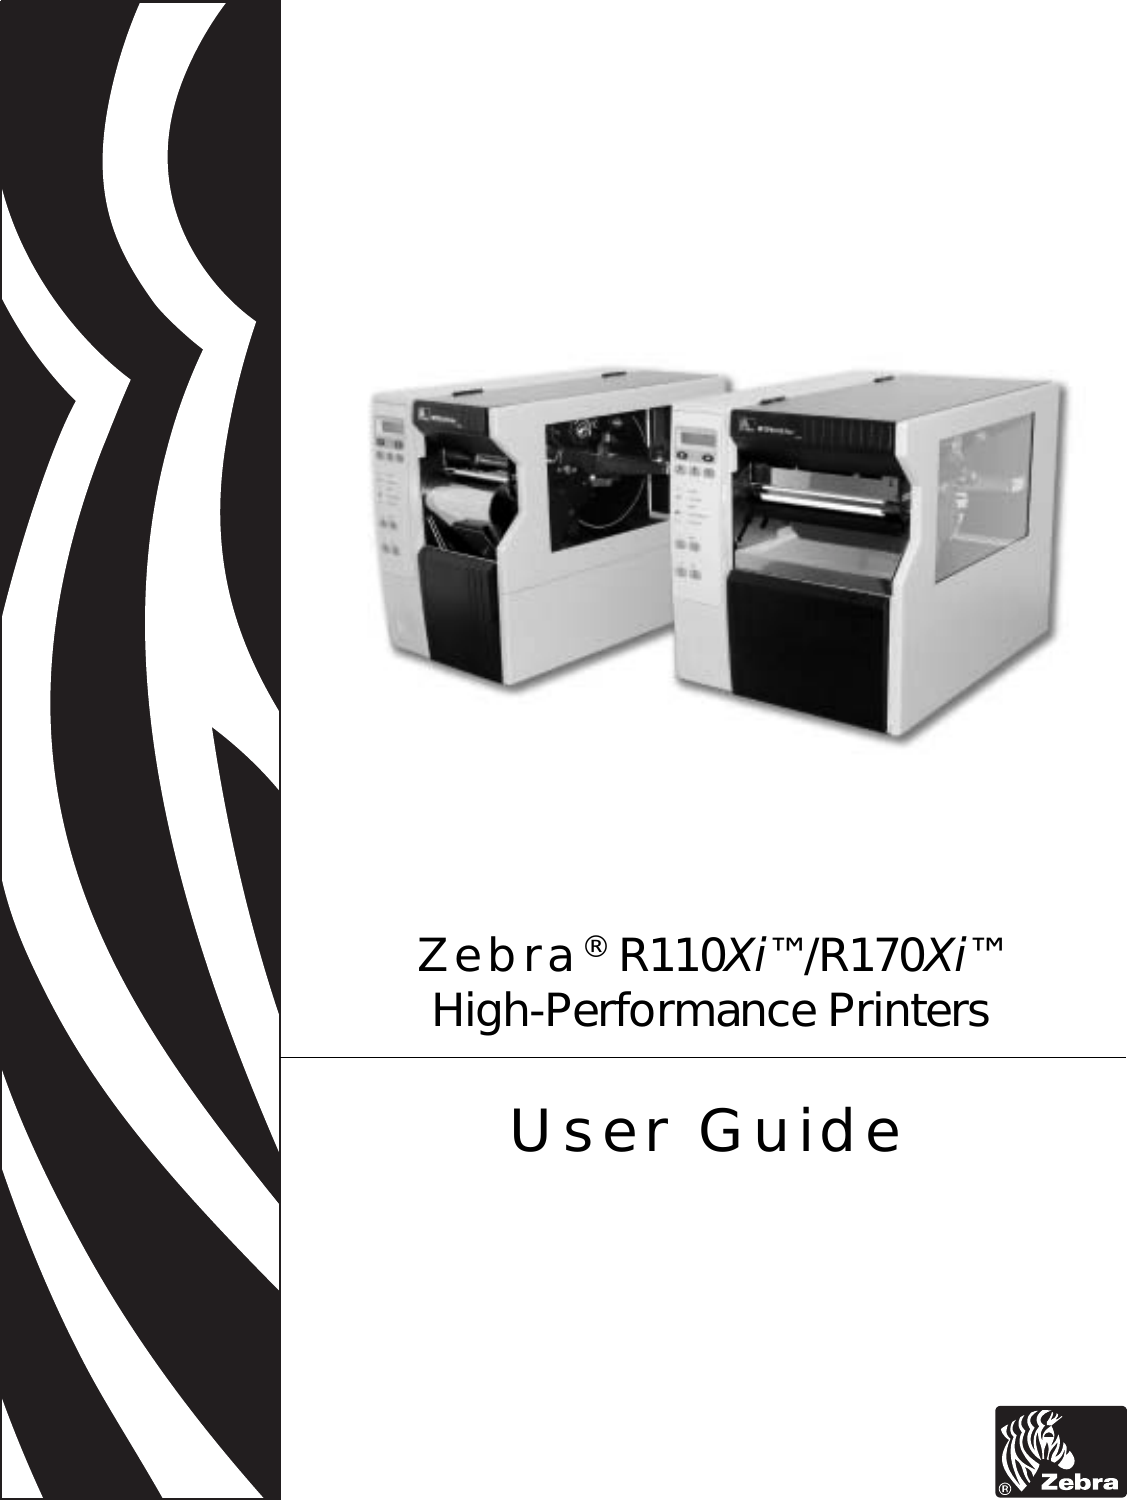  Zebra® R110Xi™/R170Xi™High-Performance PrintersUser Guide